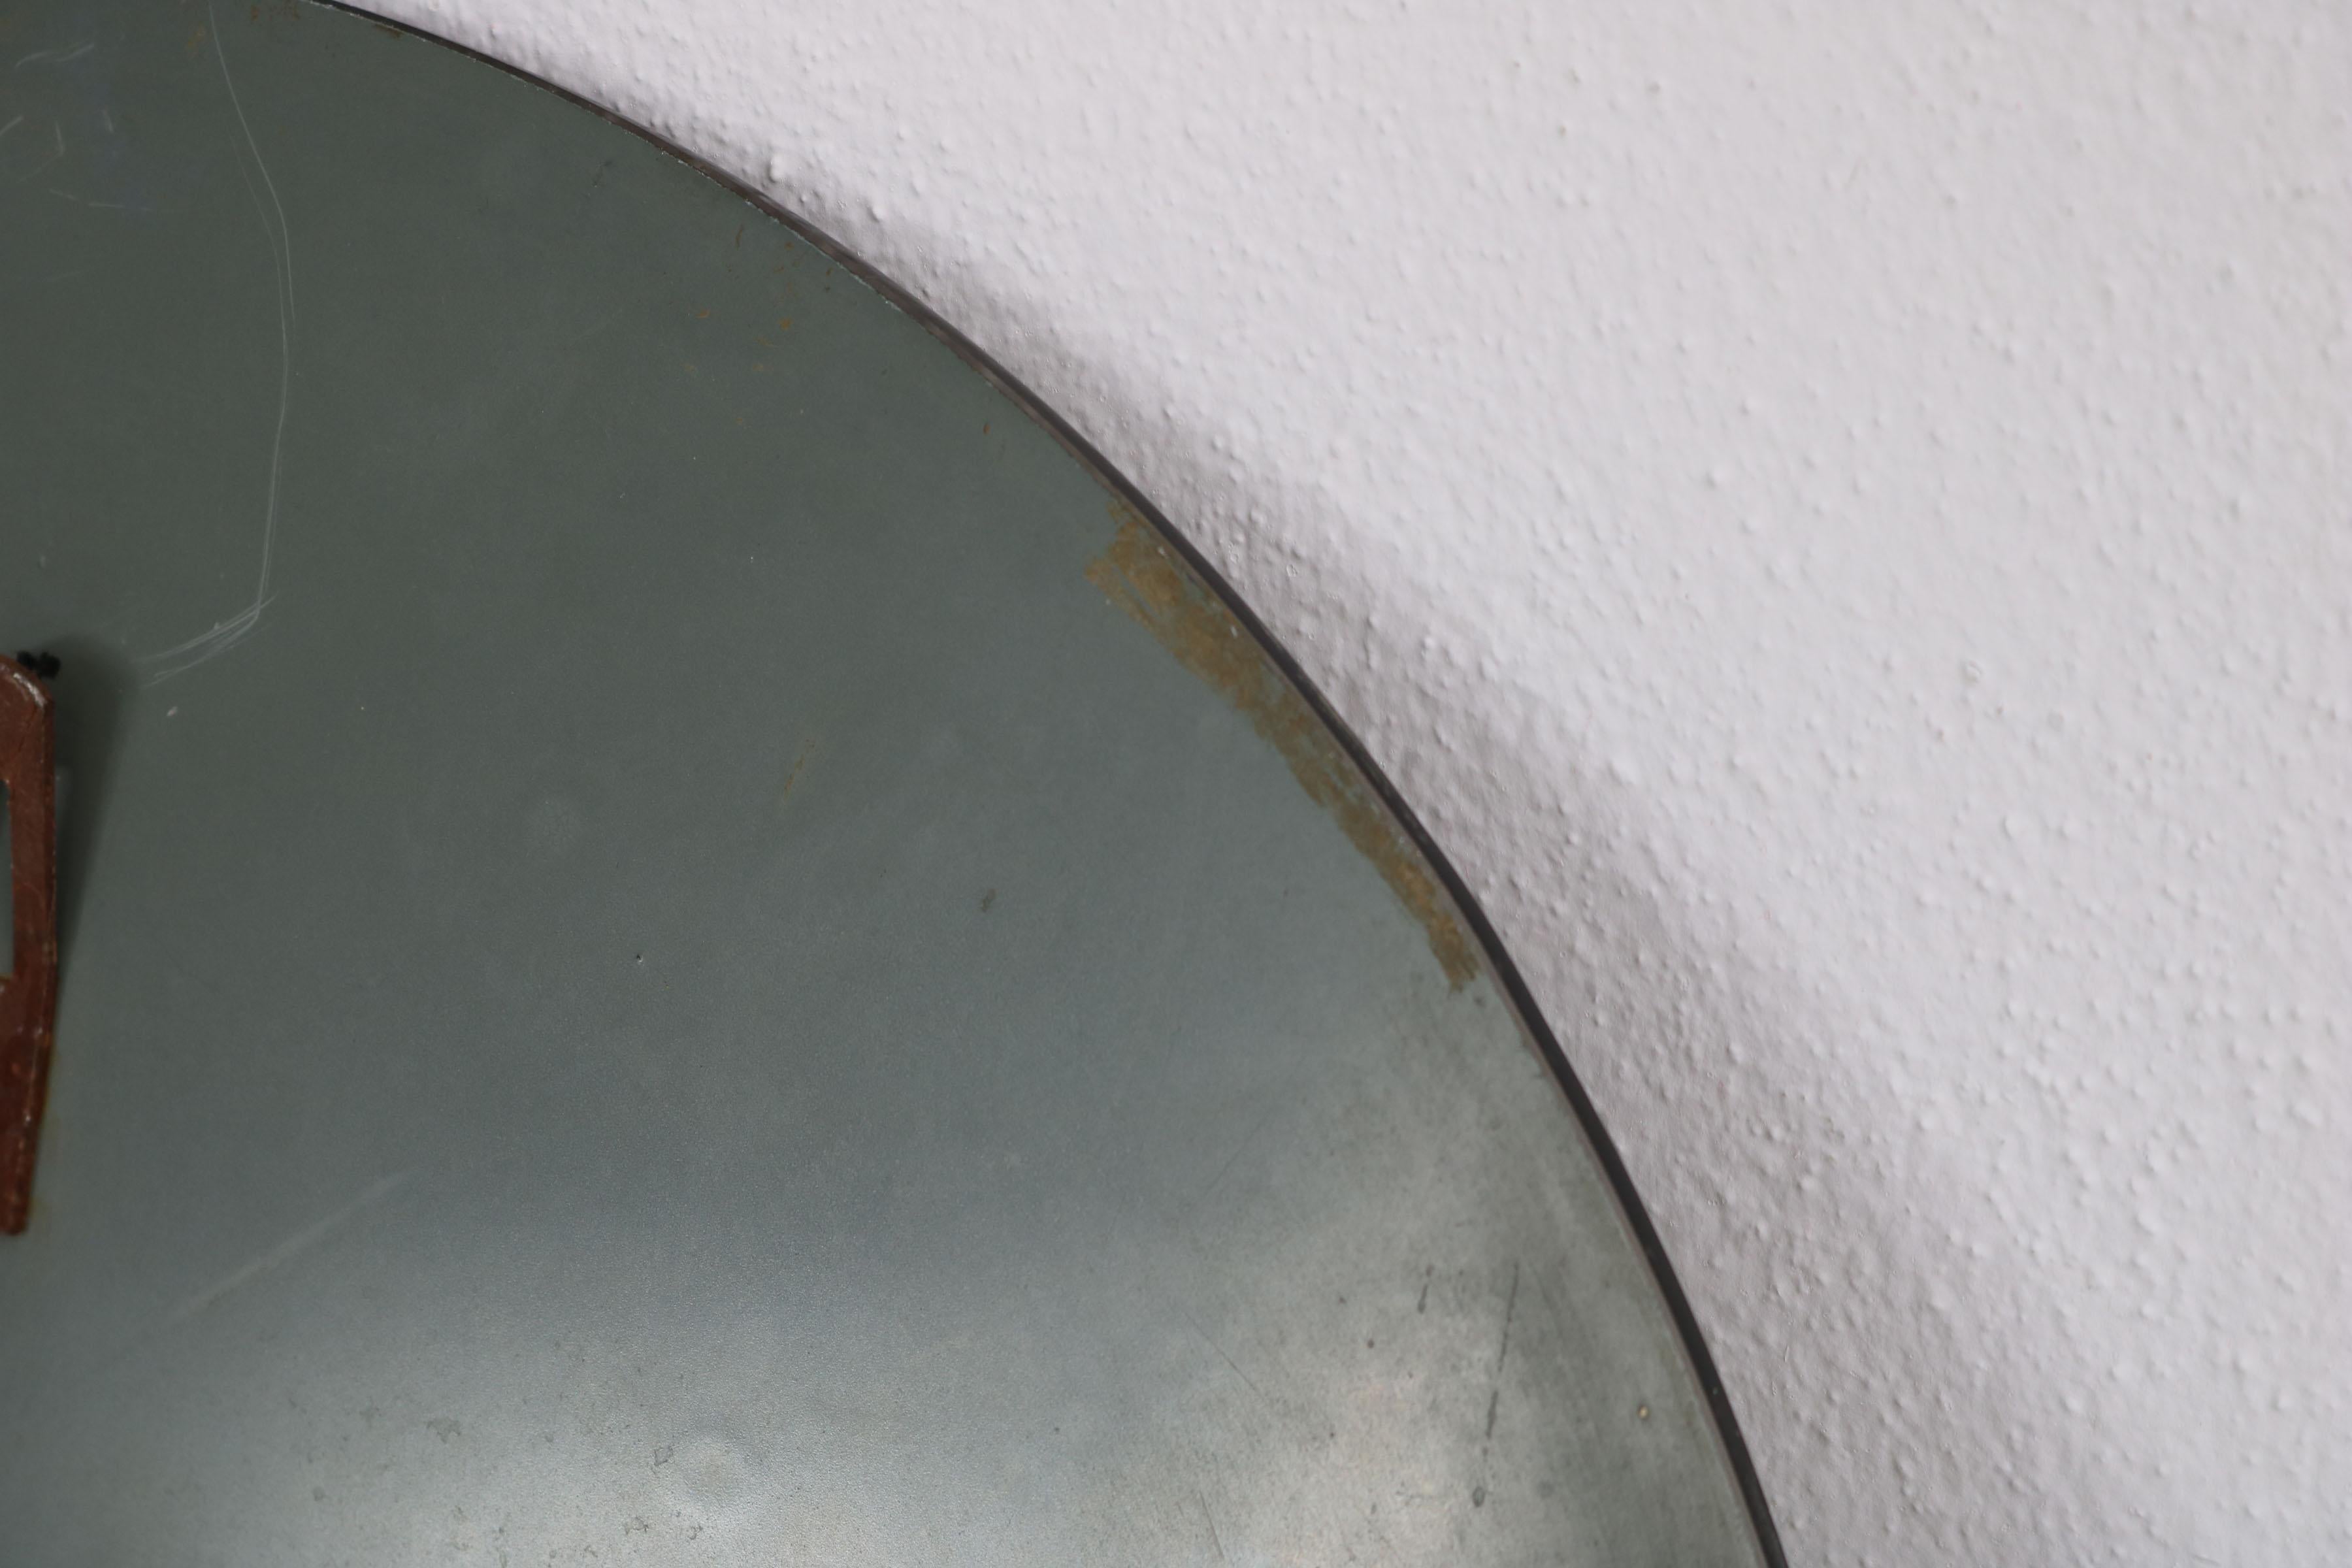 Round Italian Twotone Mirror, Design: Antonio Lupi by Cristal Luxor, 1960s For Sale 5